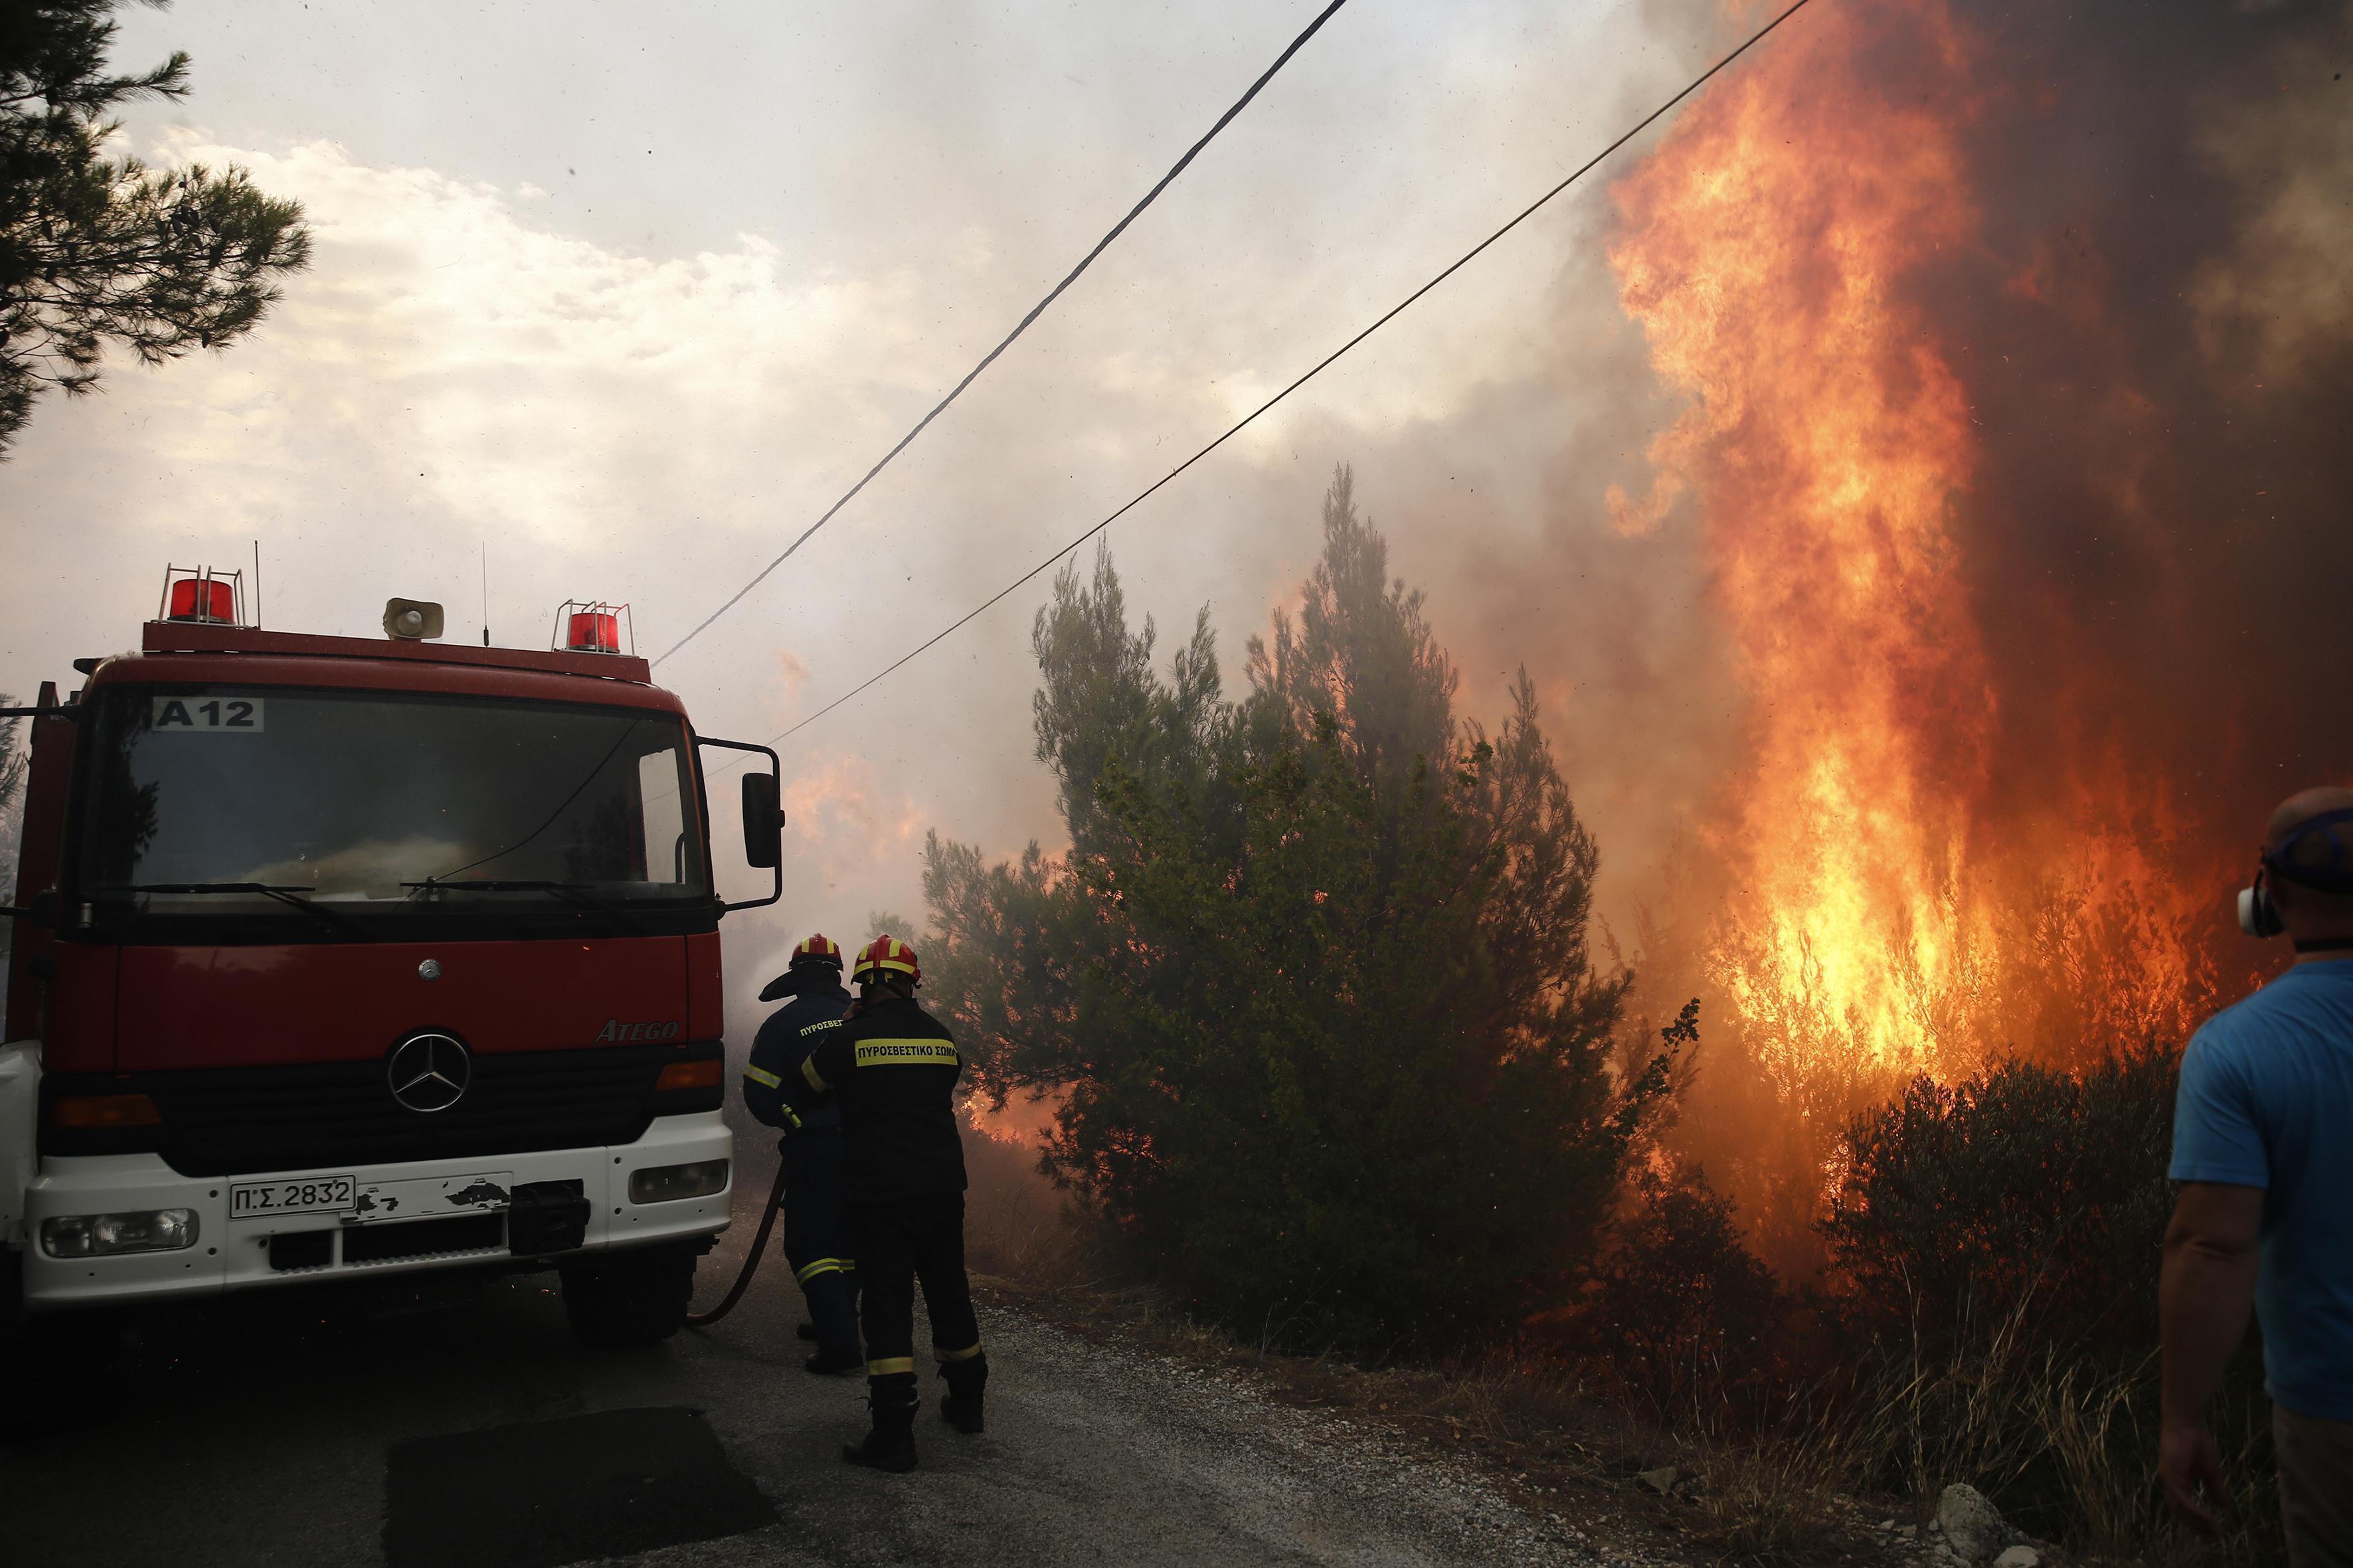 Yunanistan’daki yangında 1 kişi hayatını kaybetti